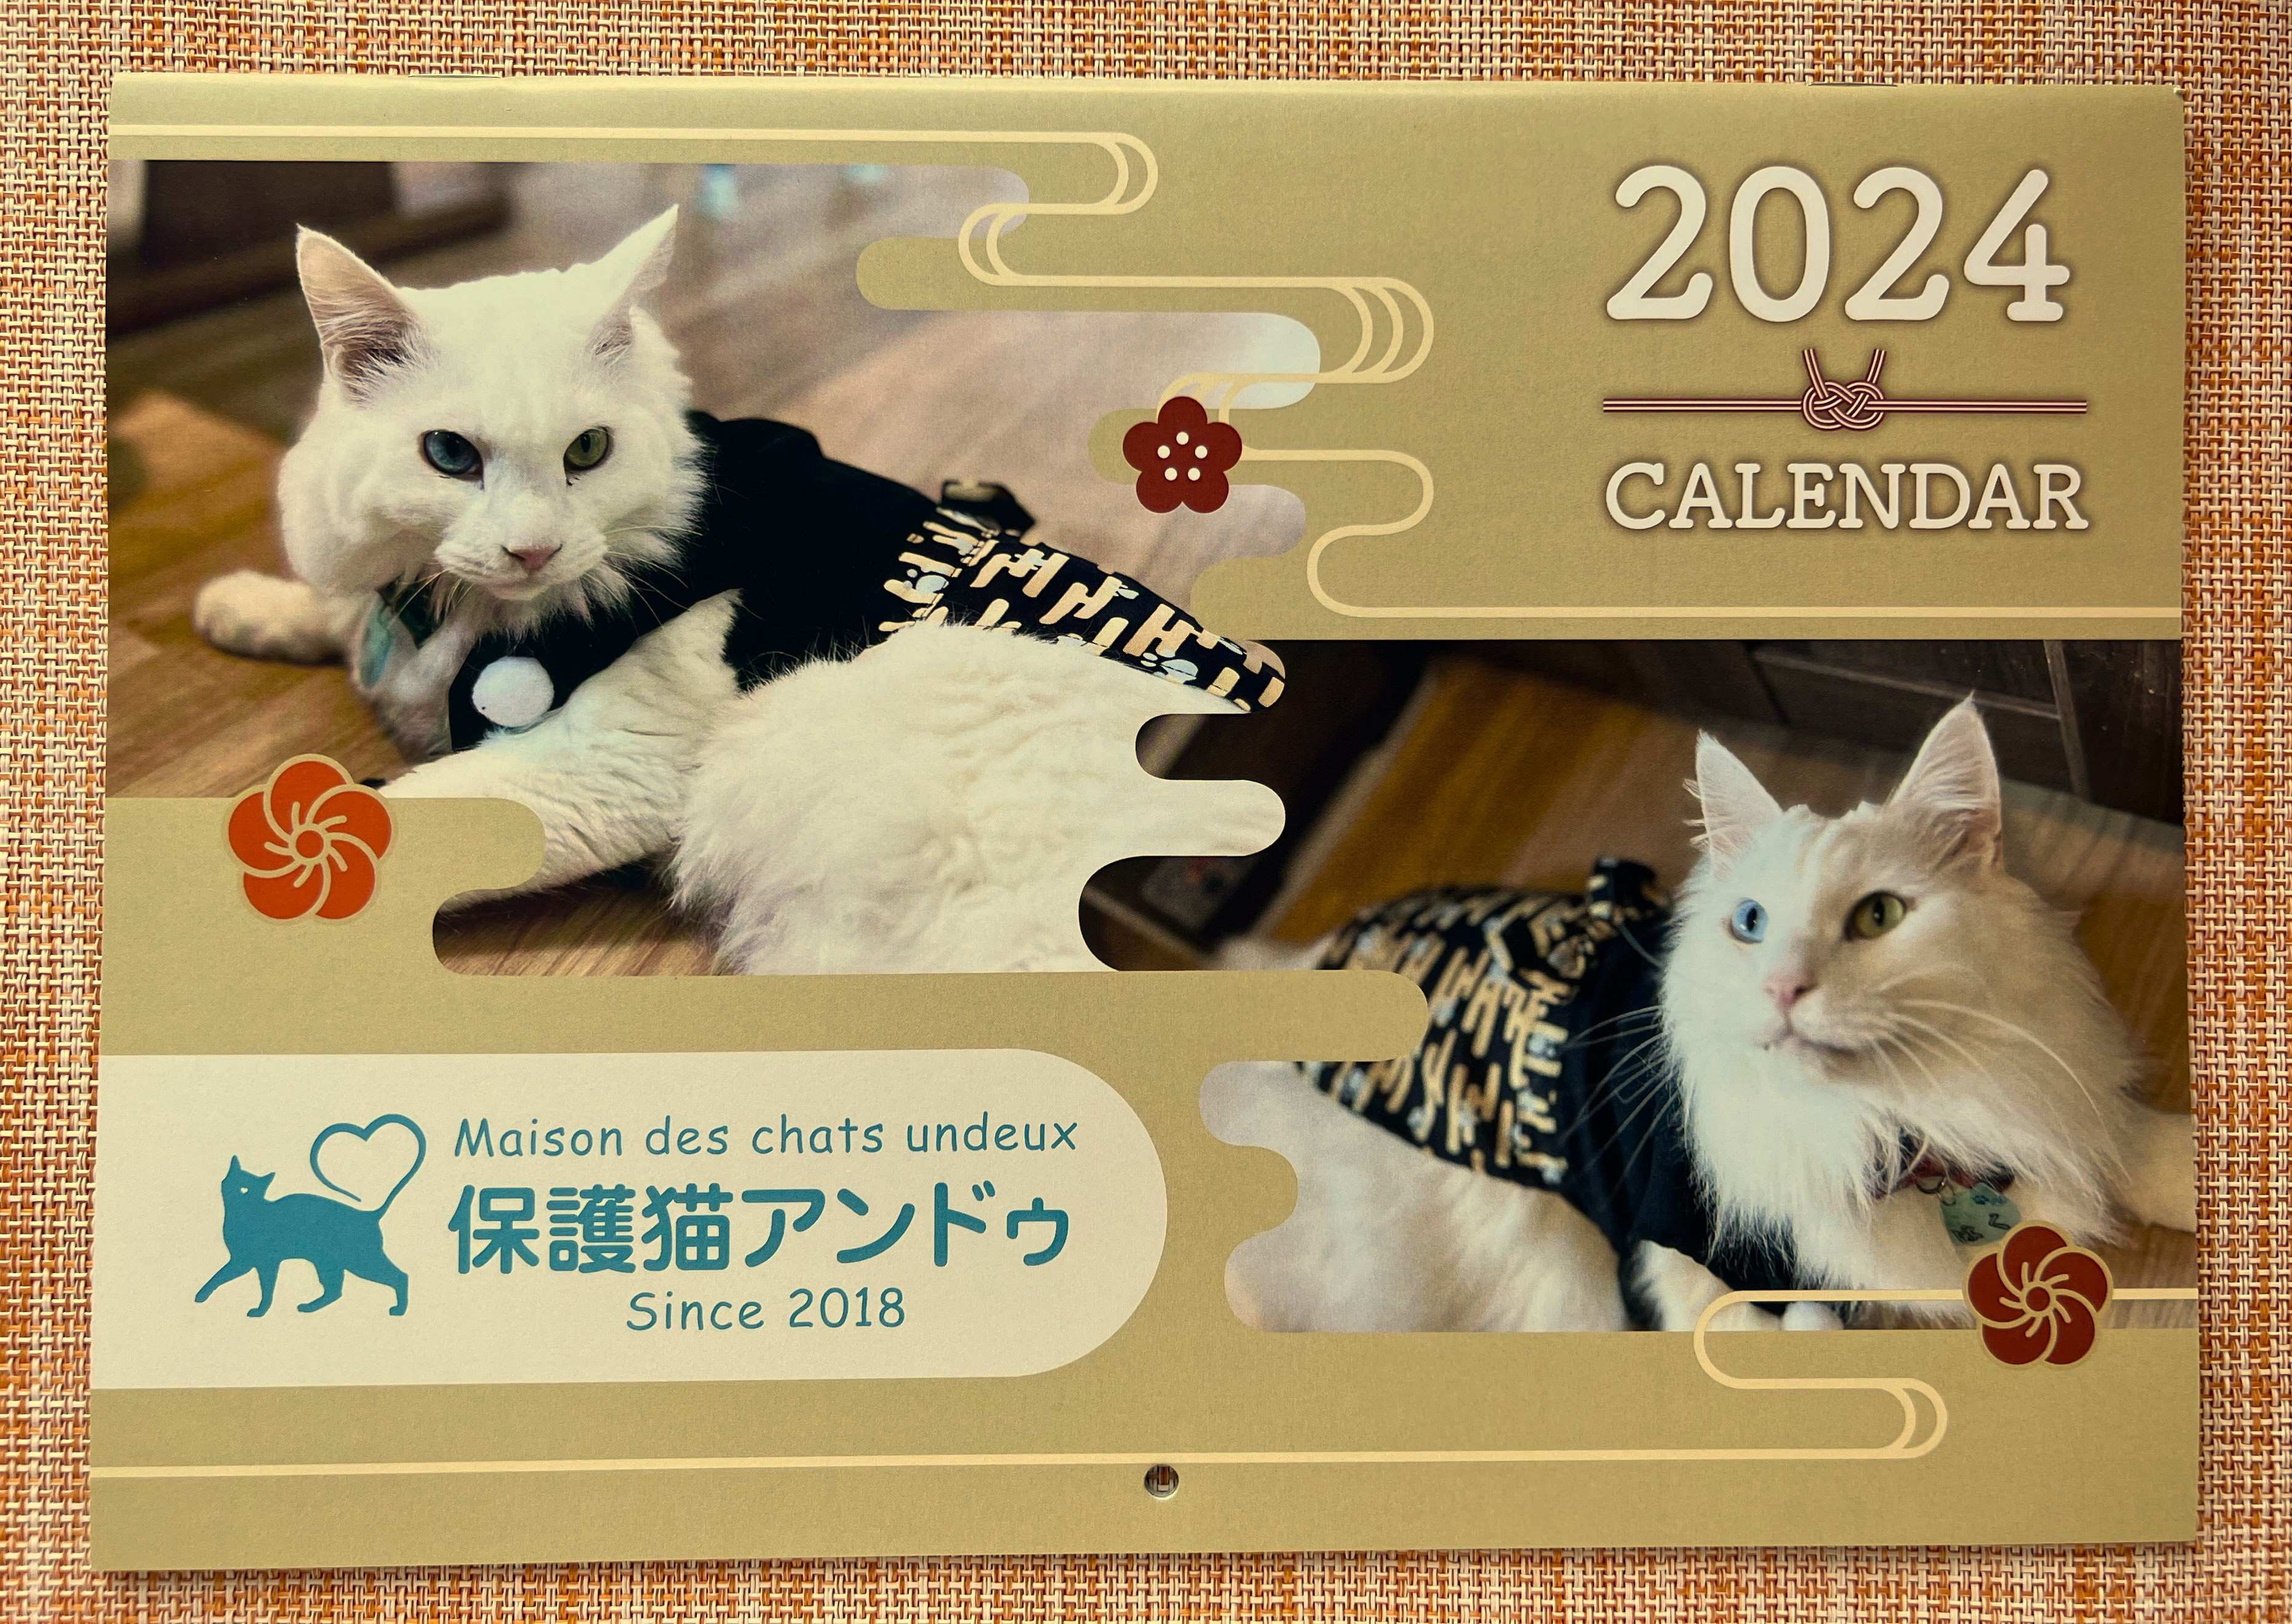 
fc-36-002 『保護猫アンドゥ』オリジナルカレンダーとフリータイムチケット3枚のセット
